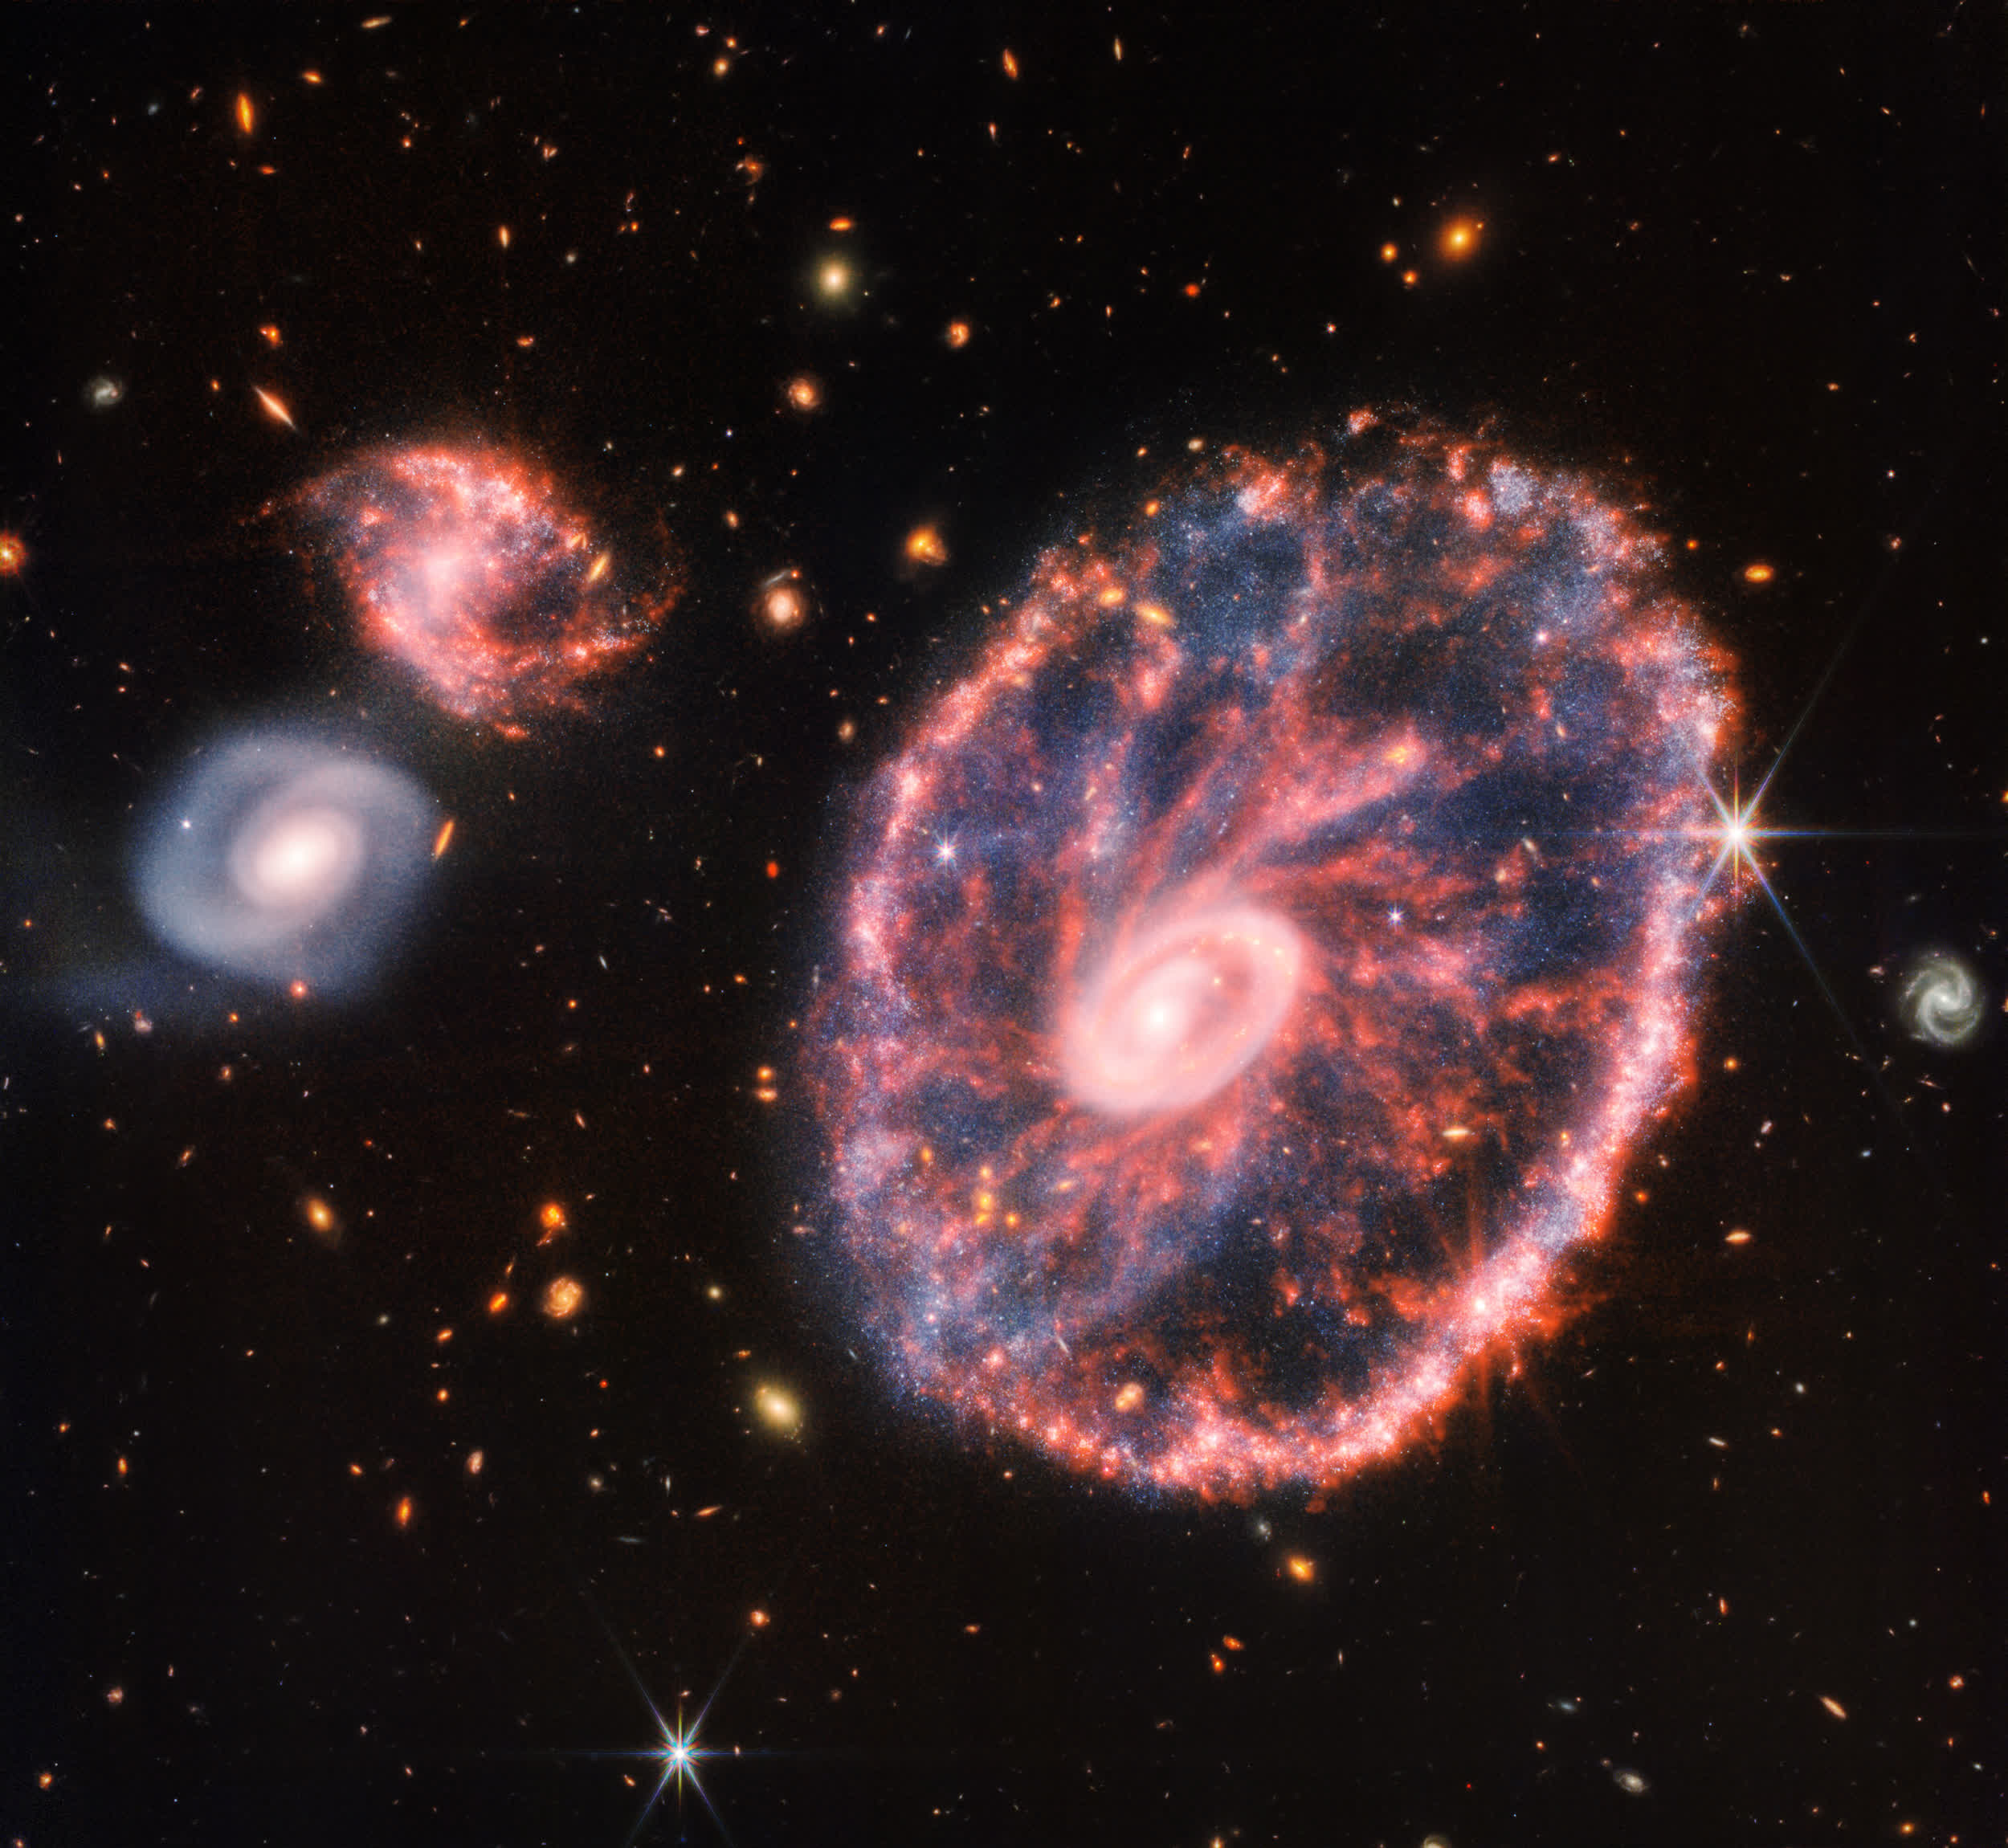 James Webb Space Telescope zeroes in on the Cartwheel Galaxy